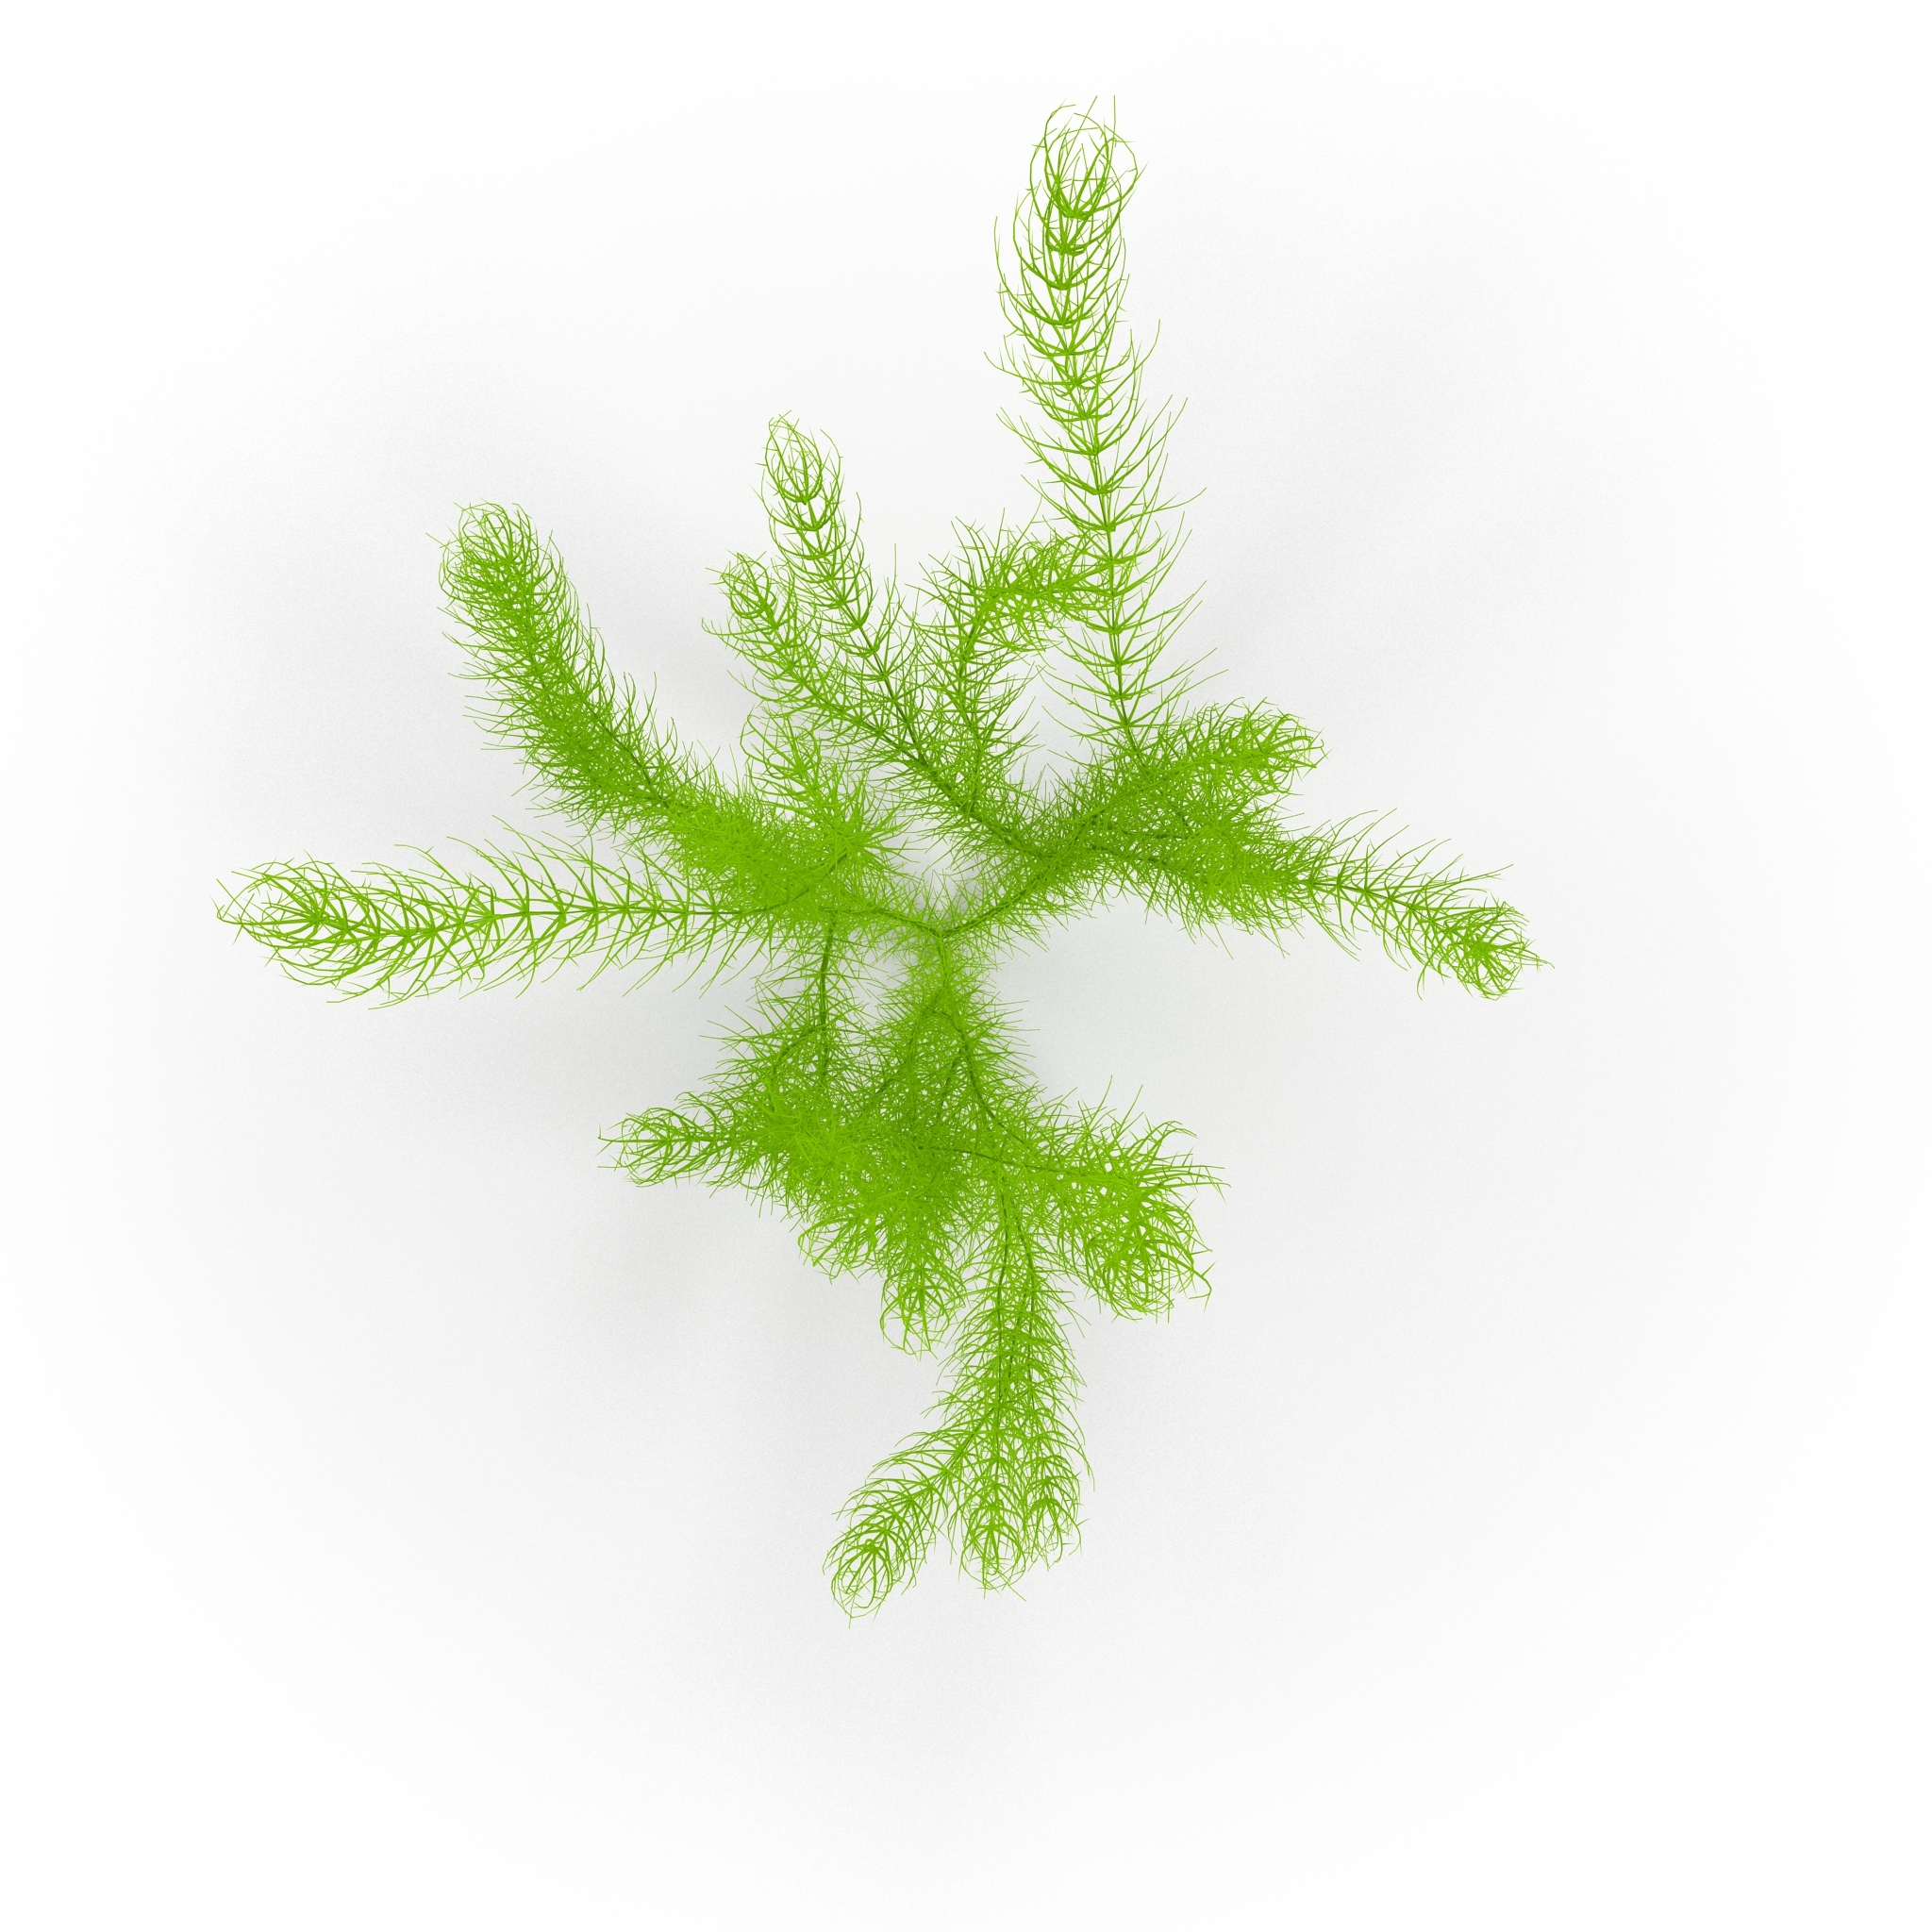 金鱼藻图片_植物根茎的金鱼藻图片大全 - 花卉网